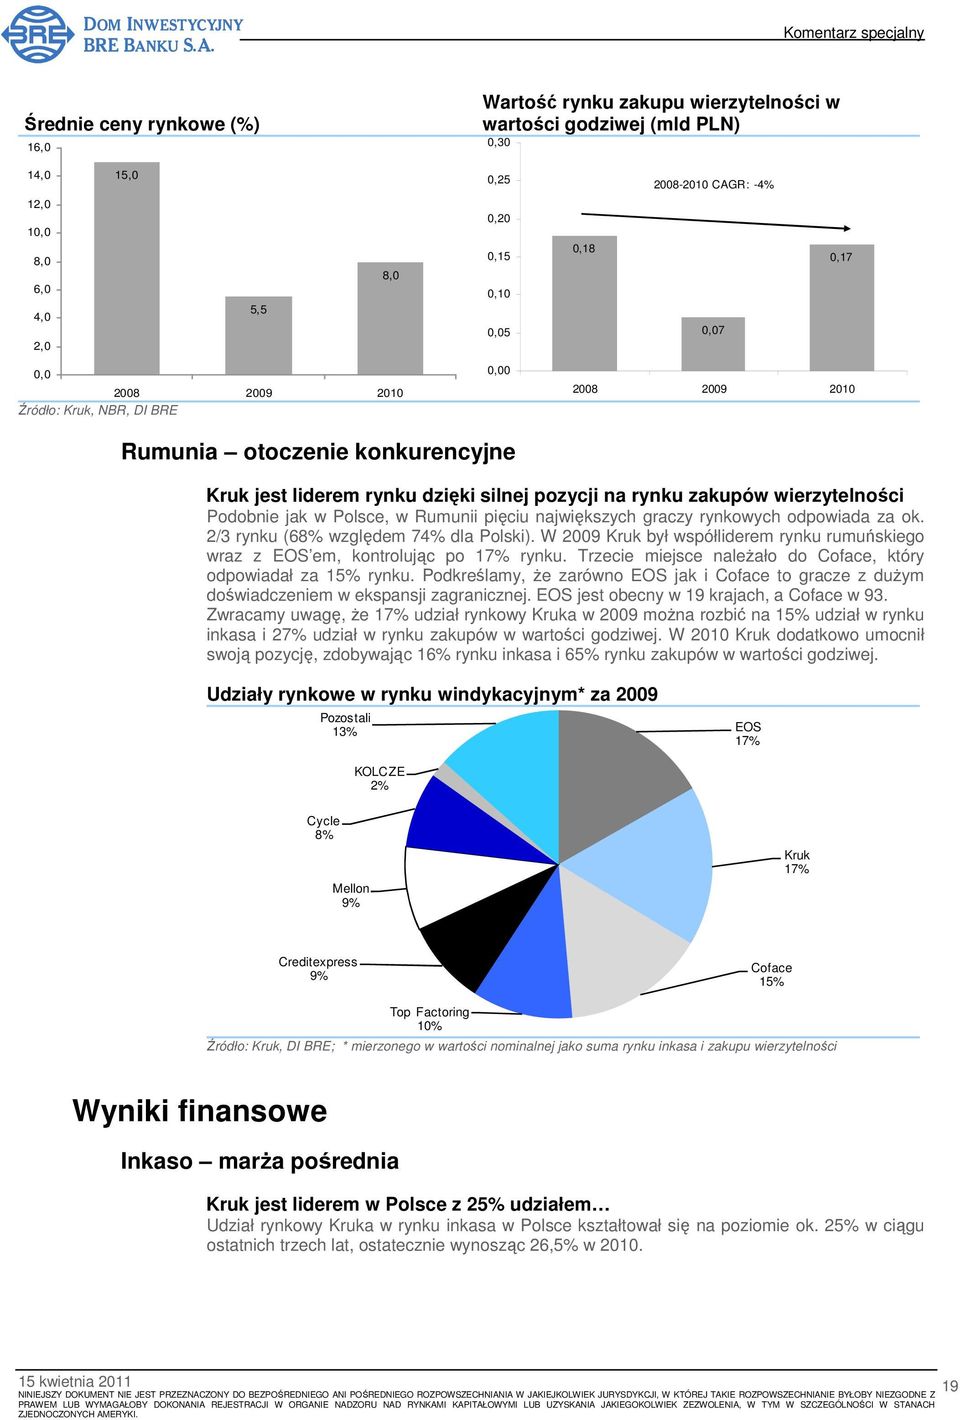 2/3 rynku (68% względem 74% dla Polski). W 29 Kruk był współliderem rynku rumuńskiego wraz z EOS em, kontrolując po 17% rynku. Trzecie miejsce naleŝało do Coface, który odpowiadał za 15% rynku.